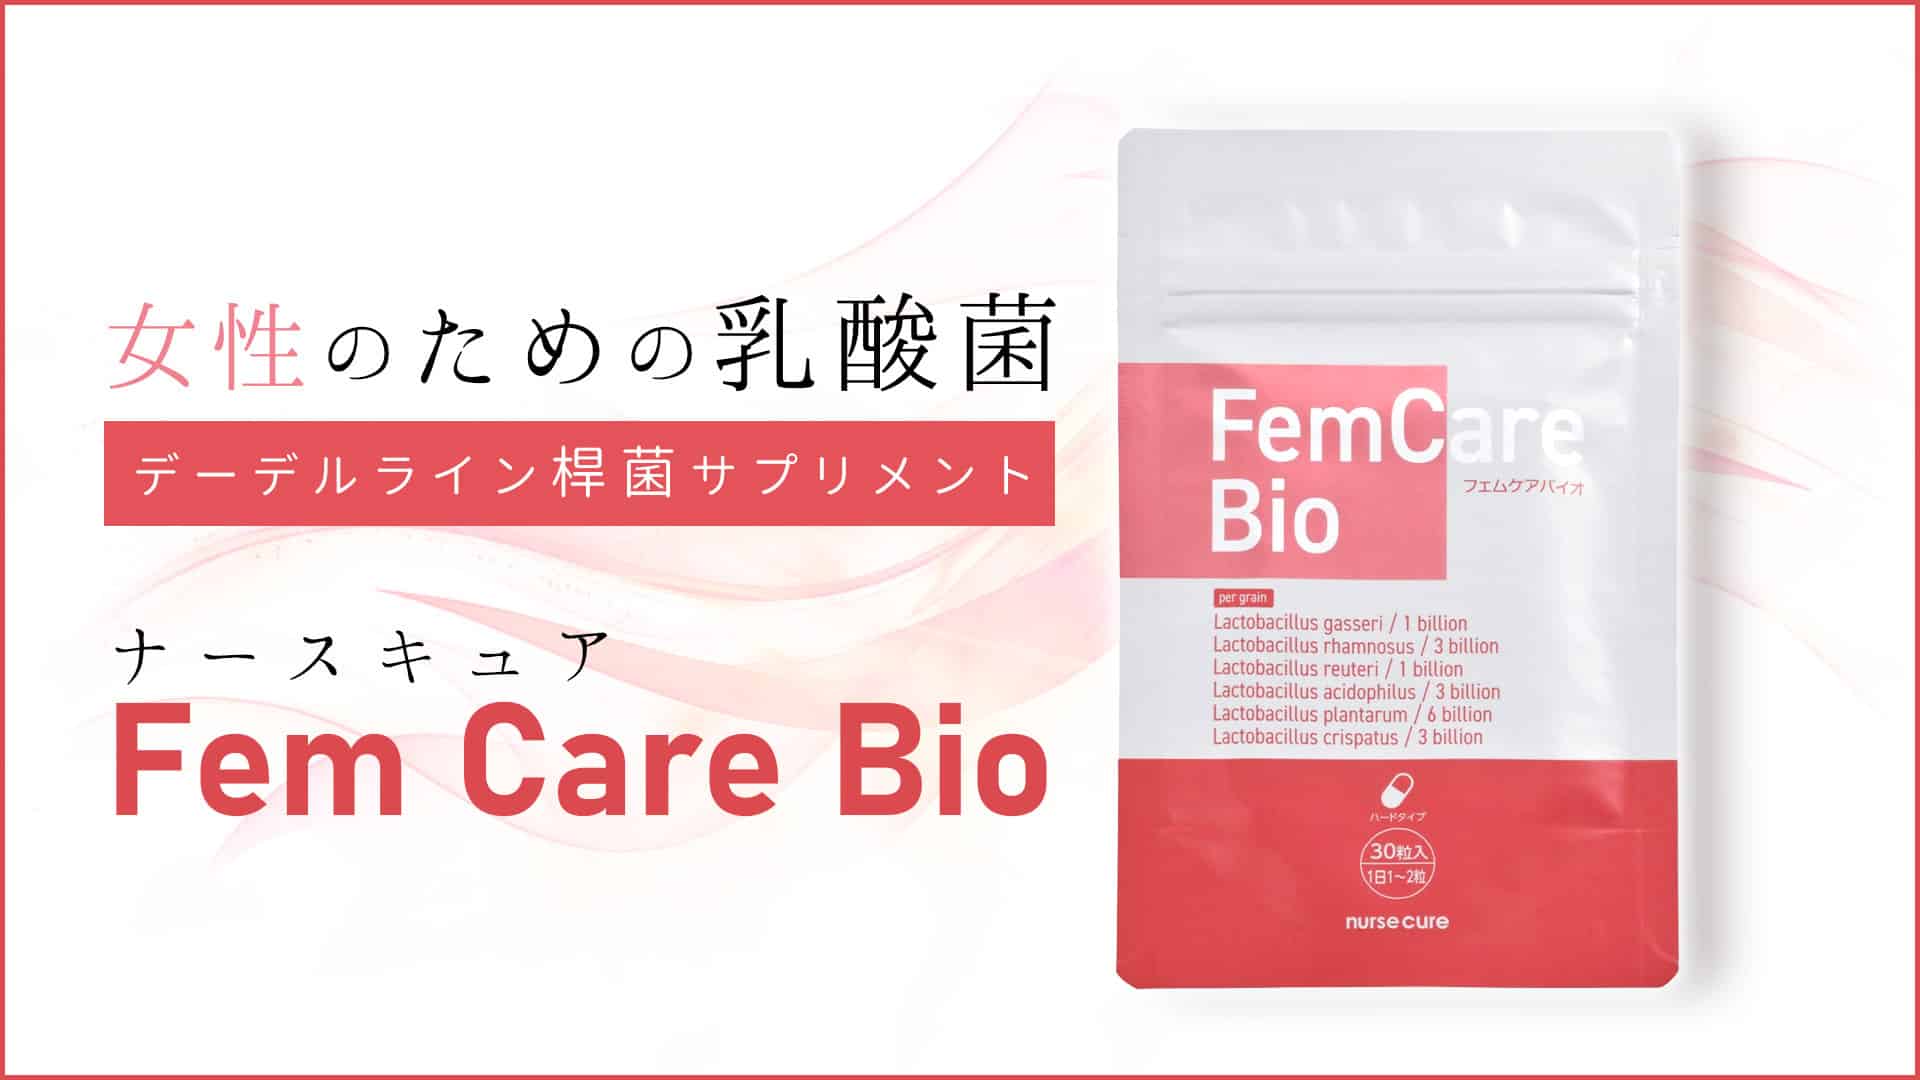 ナースキュアFen Care Bio